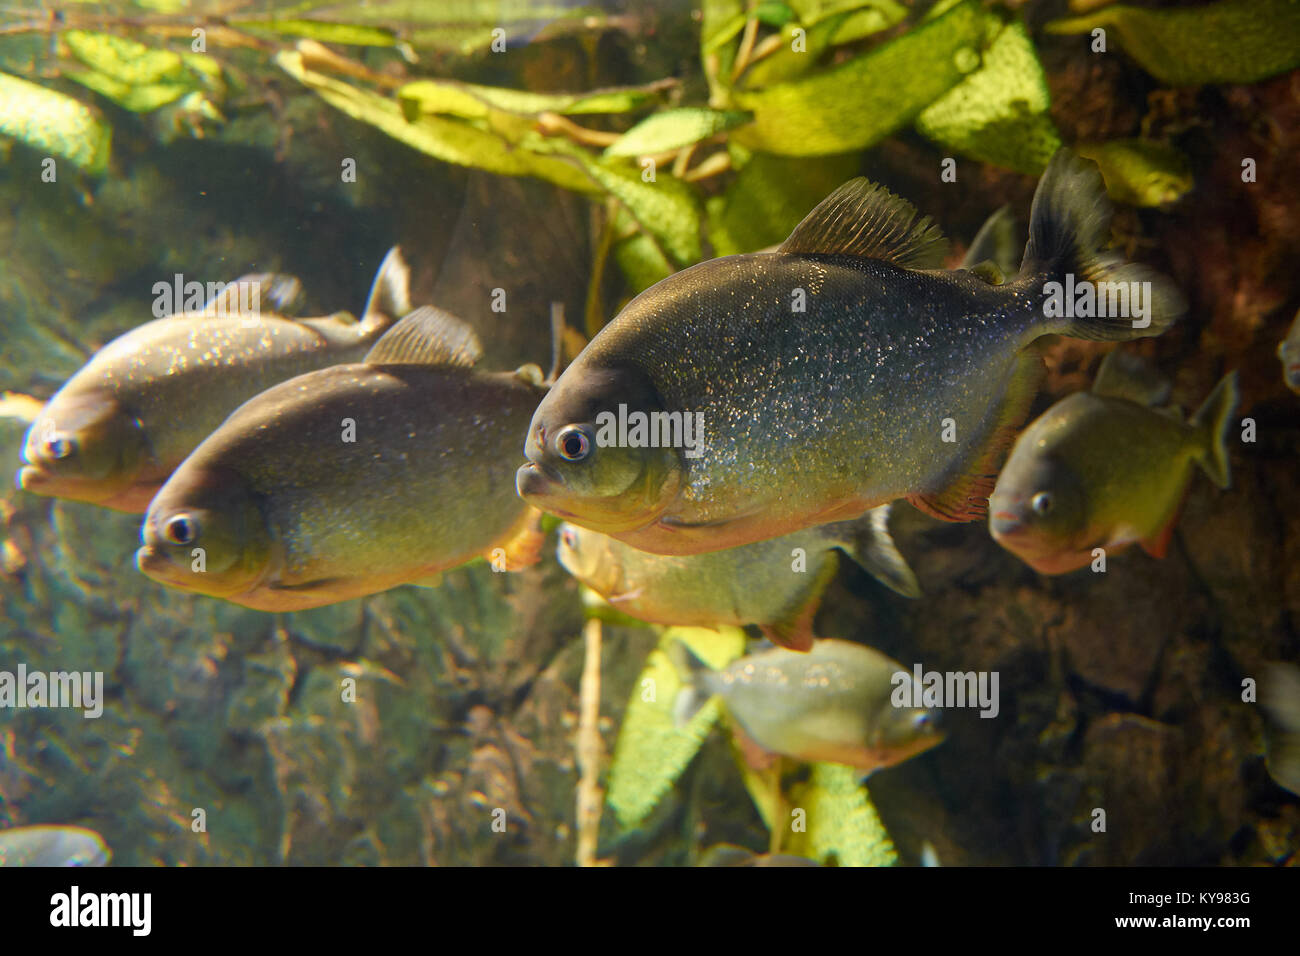 Miti circondano piranha rosso in un acquario Foto Stock